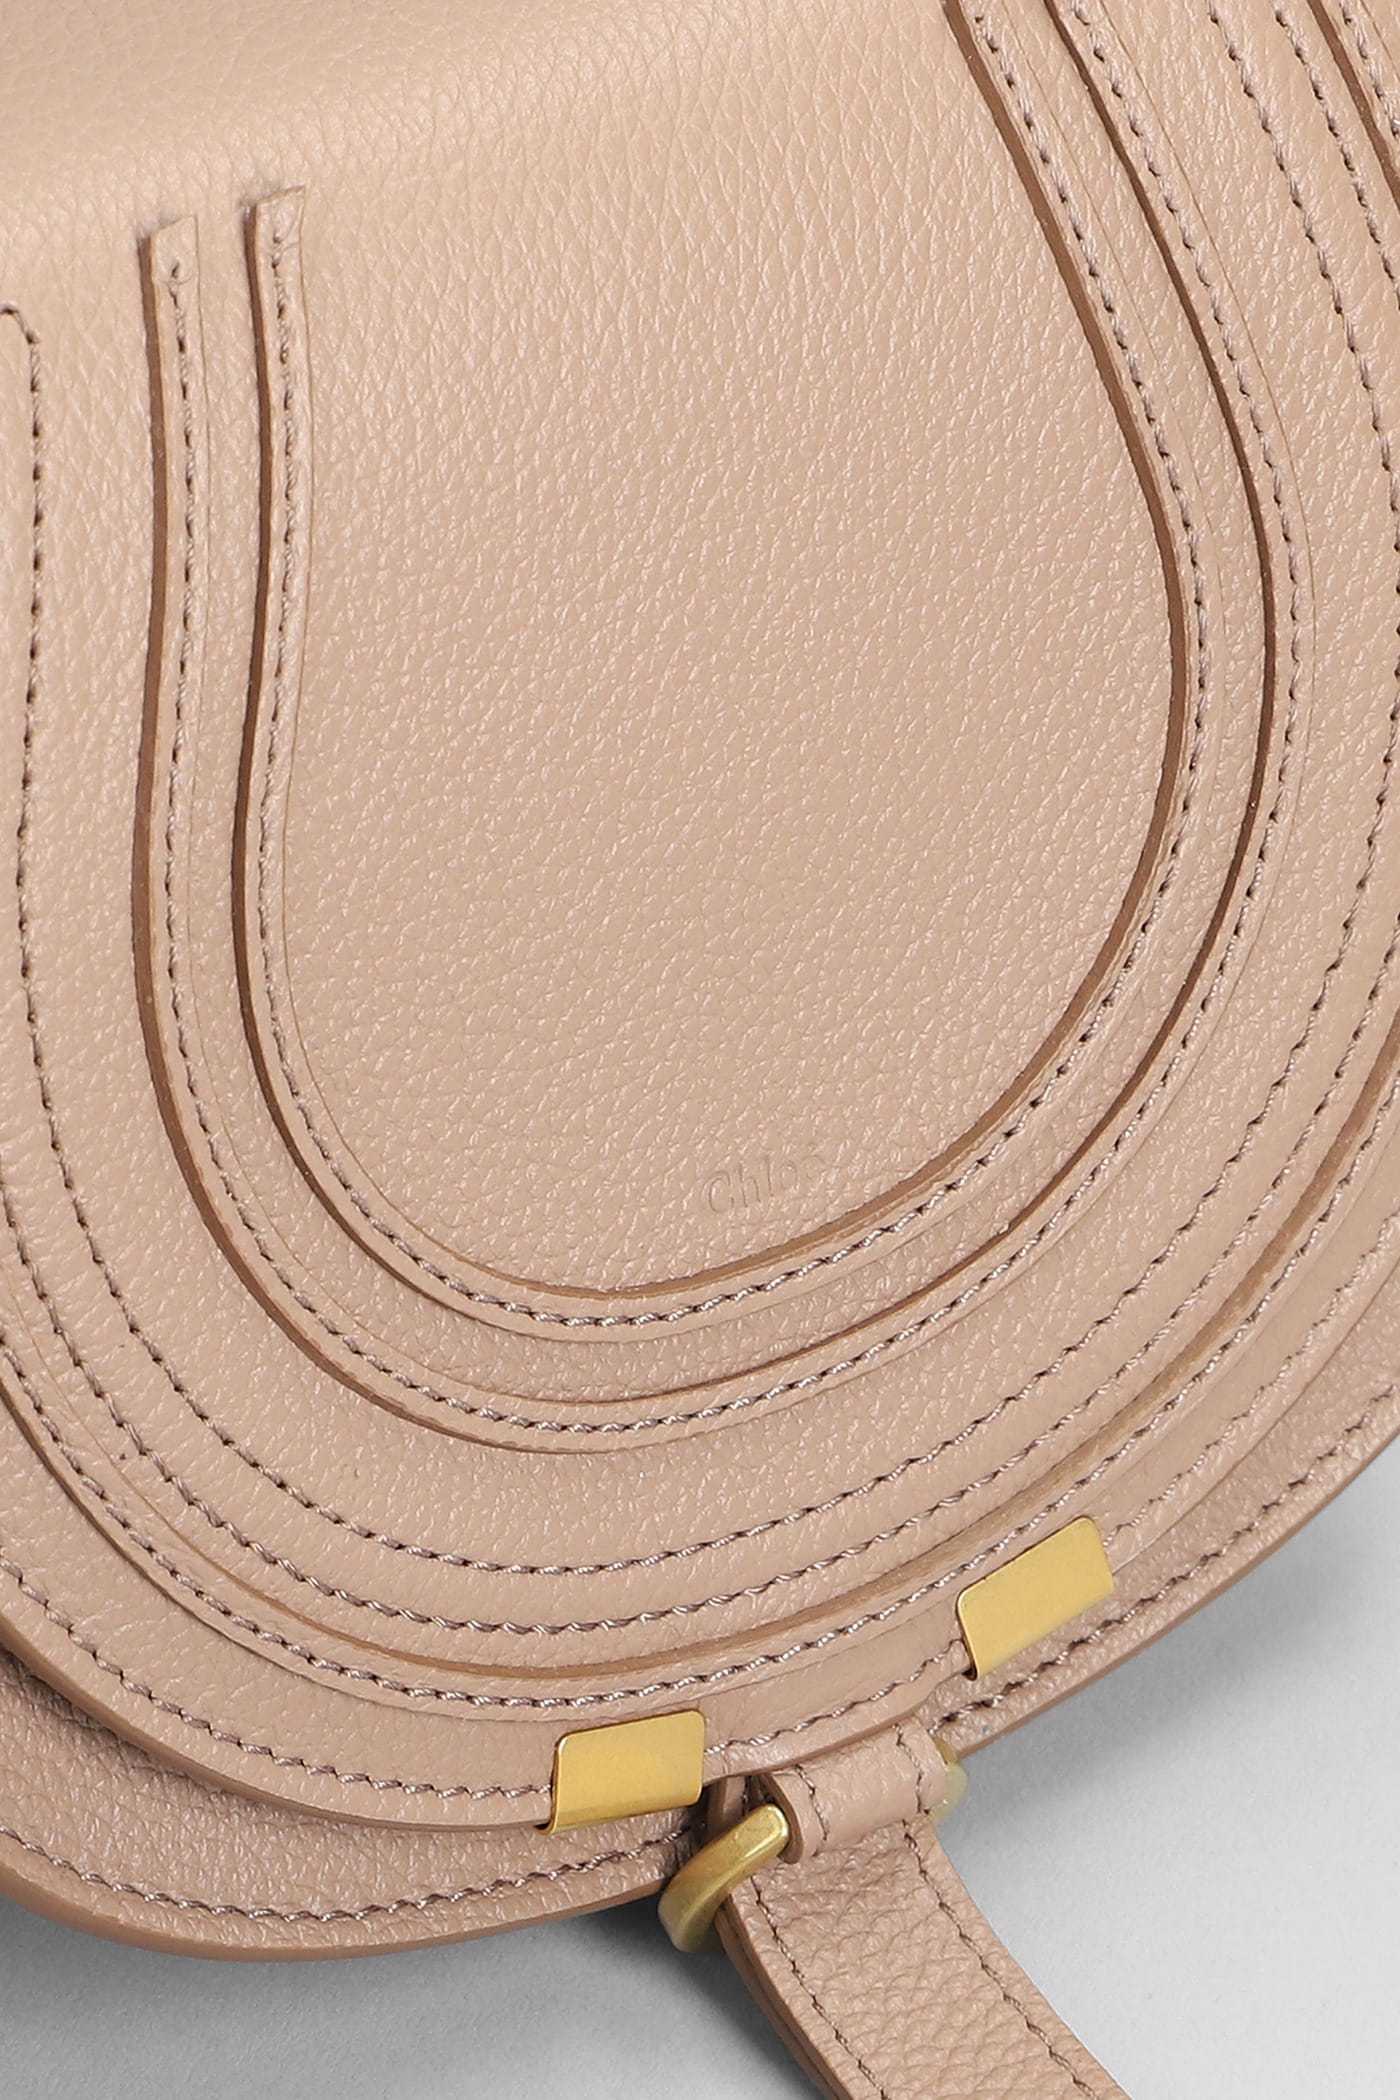 Shop Chloé Mercie Shoulder Bag In Powder Leather